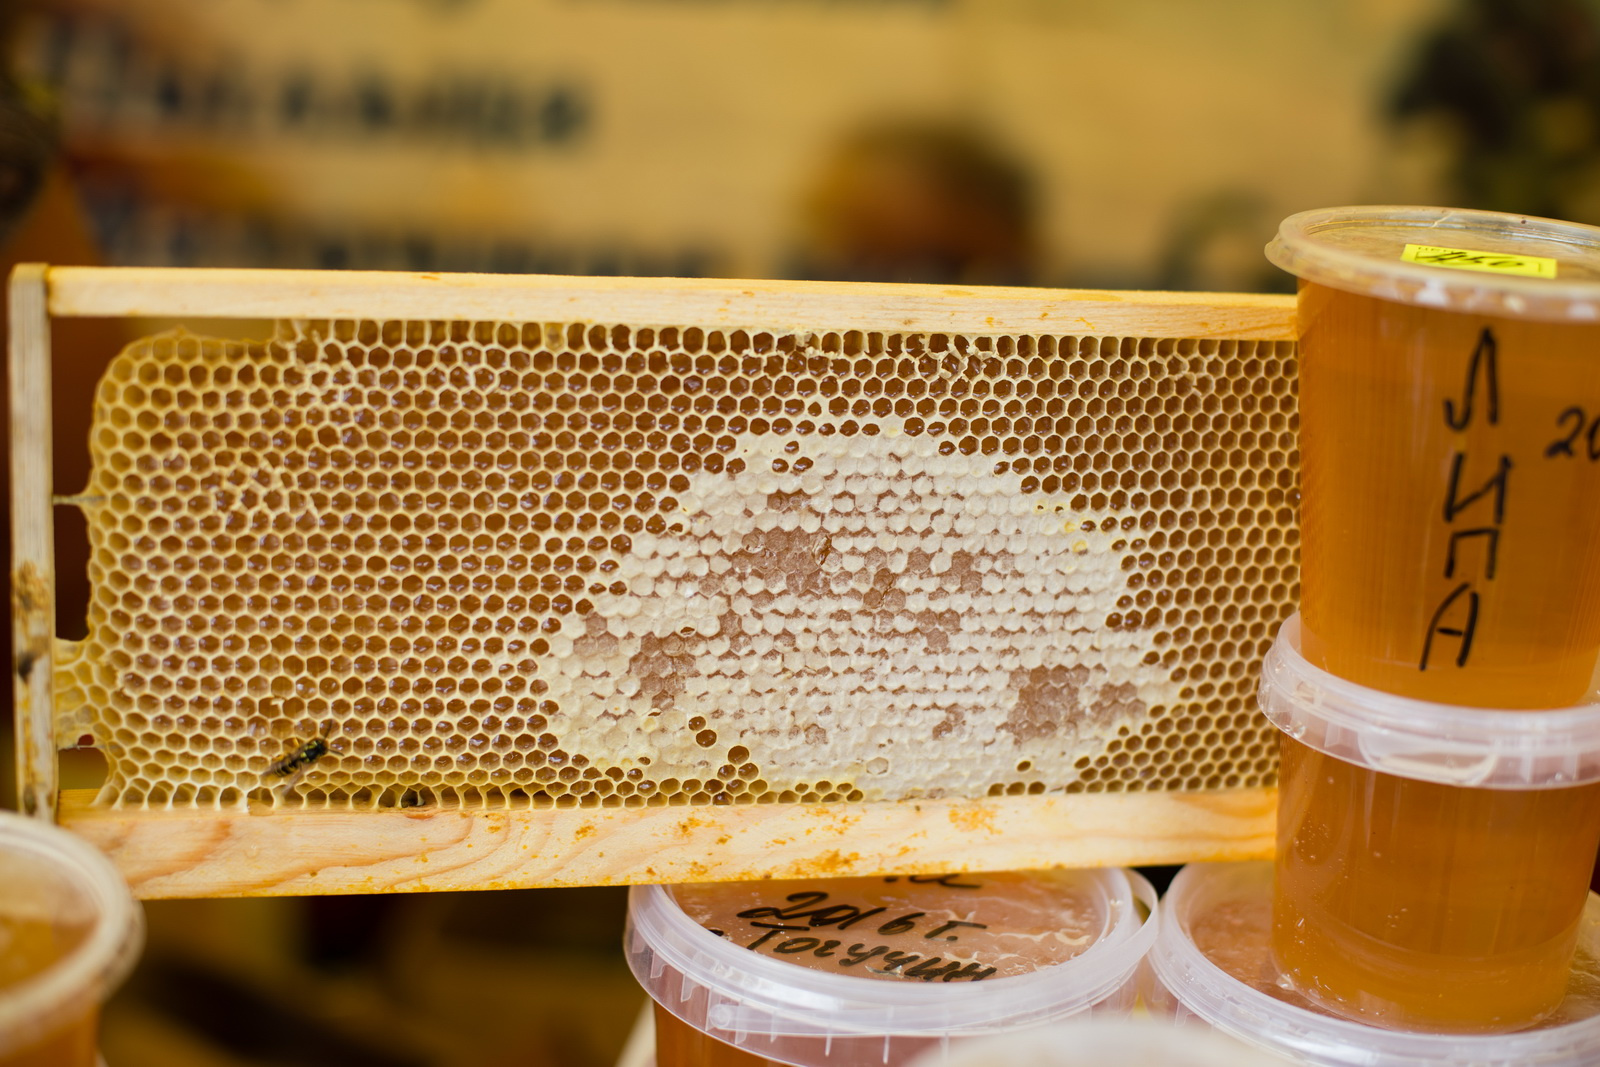 Каждые выходные ярмарку отборного меда посещают эксперты по пчеловодству, среди которых профессор В.Г. Кашковский, В.Н. Киселев и другие члены общества пчеловодов НСО. У эксперта можно получить бесплатную консультацию при выборе нужного сорта меда.